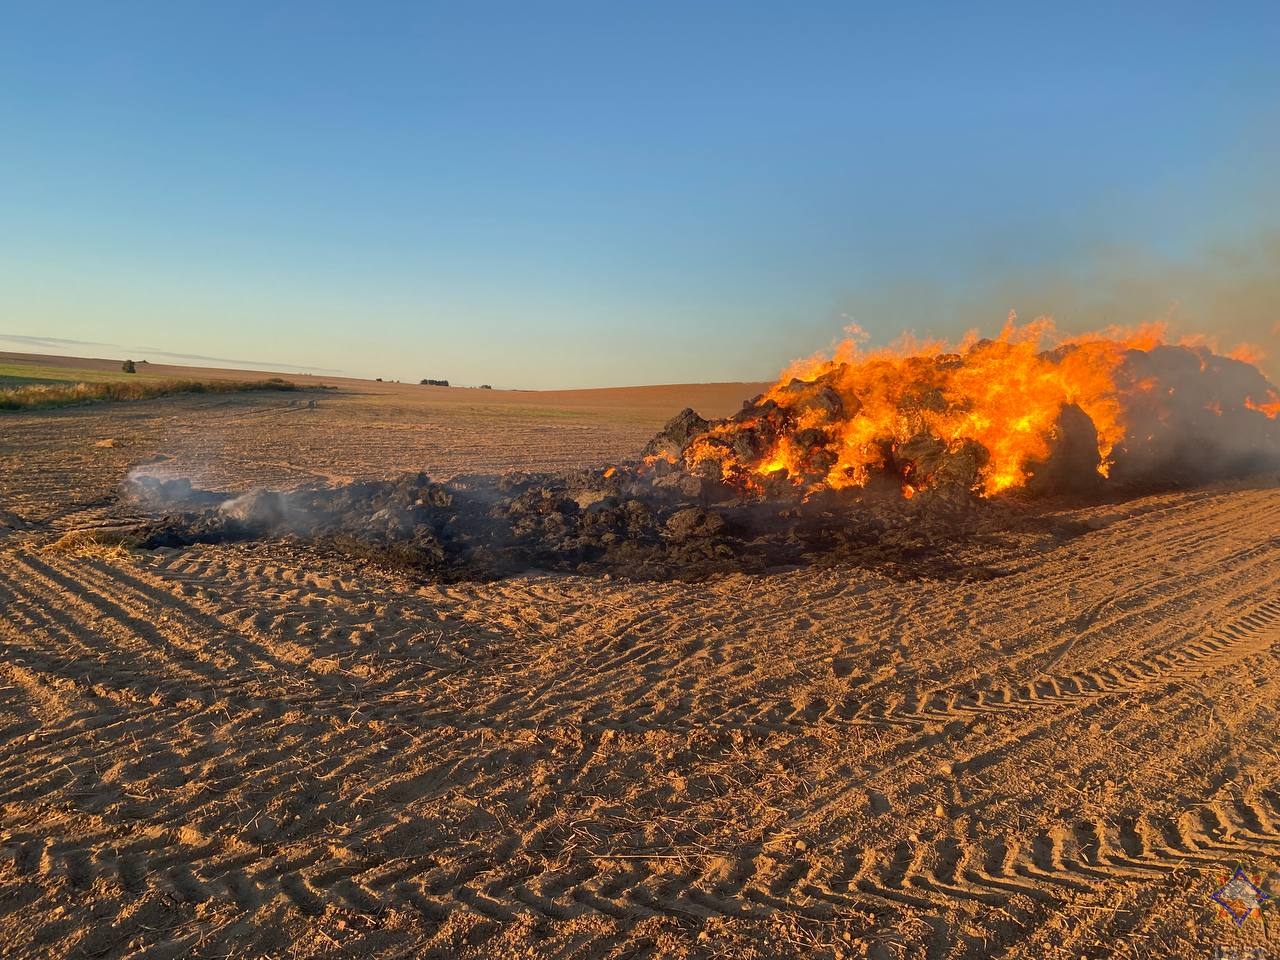 Бросали спички: под Гродно дети сожгли 145 тонн соломы